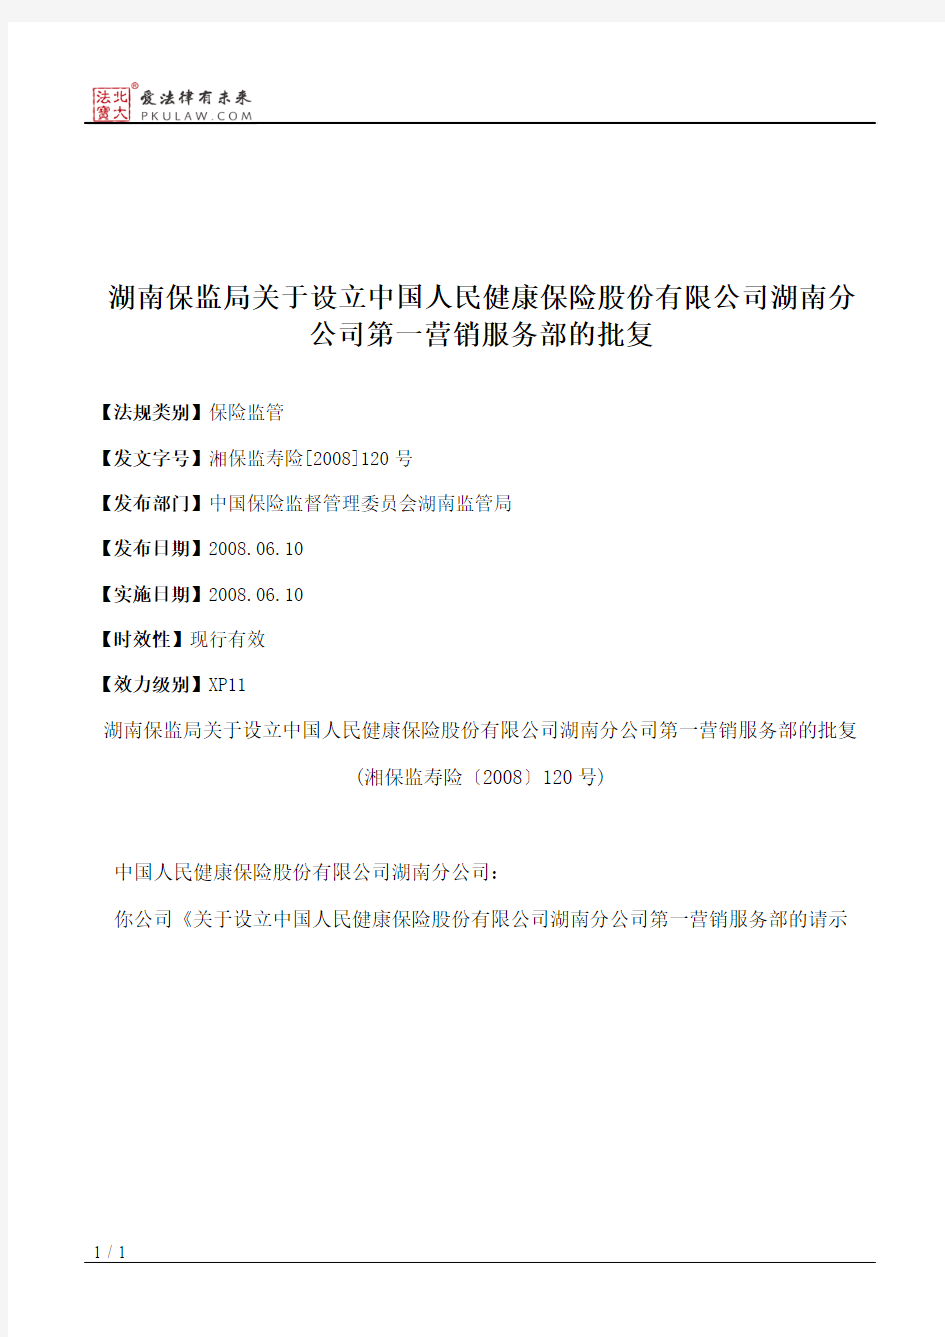 湖南保监局关于设立中国人民健康保险股份有限公司湖南分公司第一